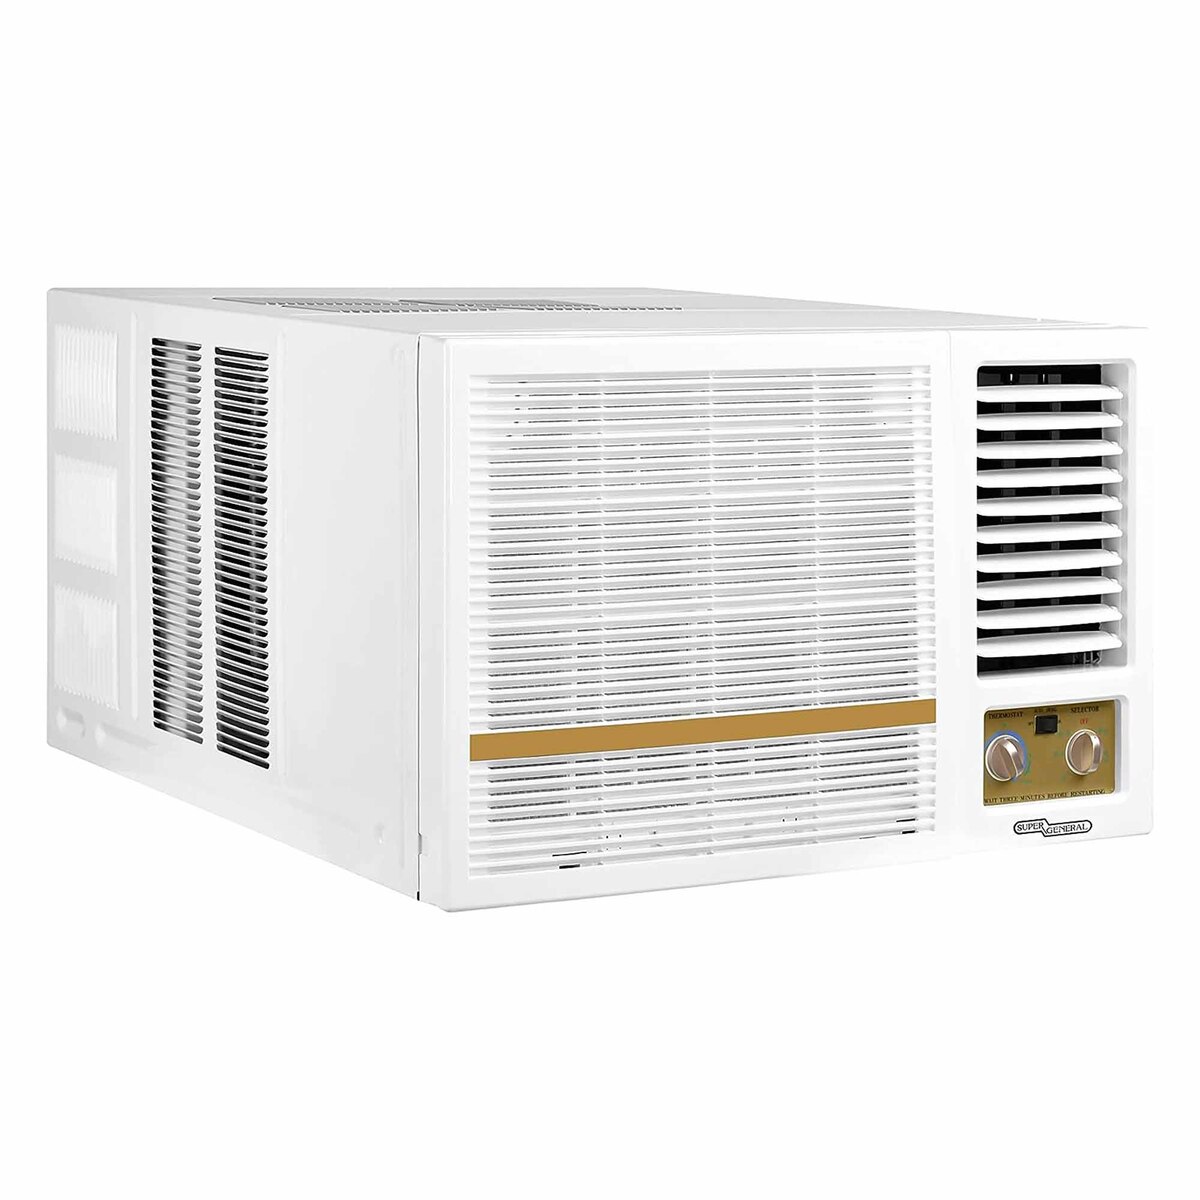 Super General Window Air Conditioner, 1.5T, Rotary Compressor, SGA19-AE